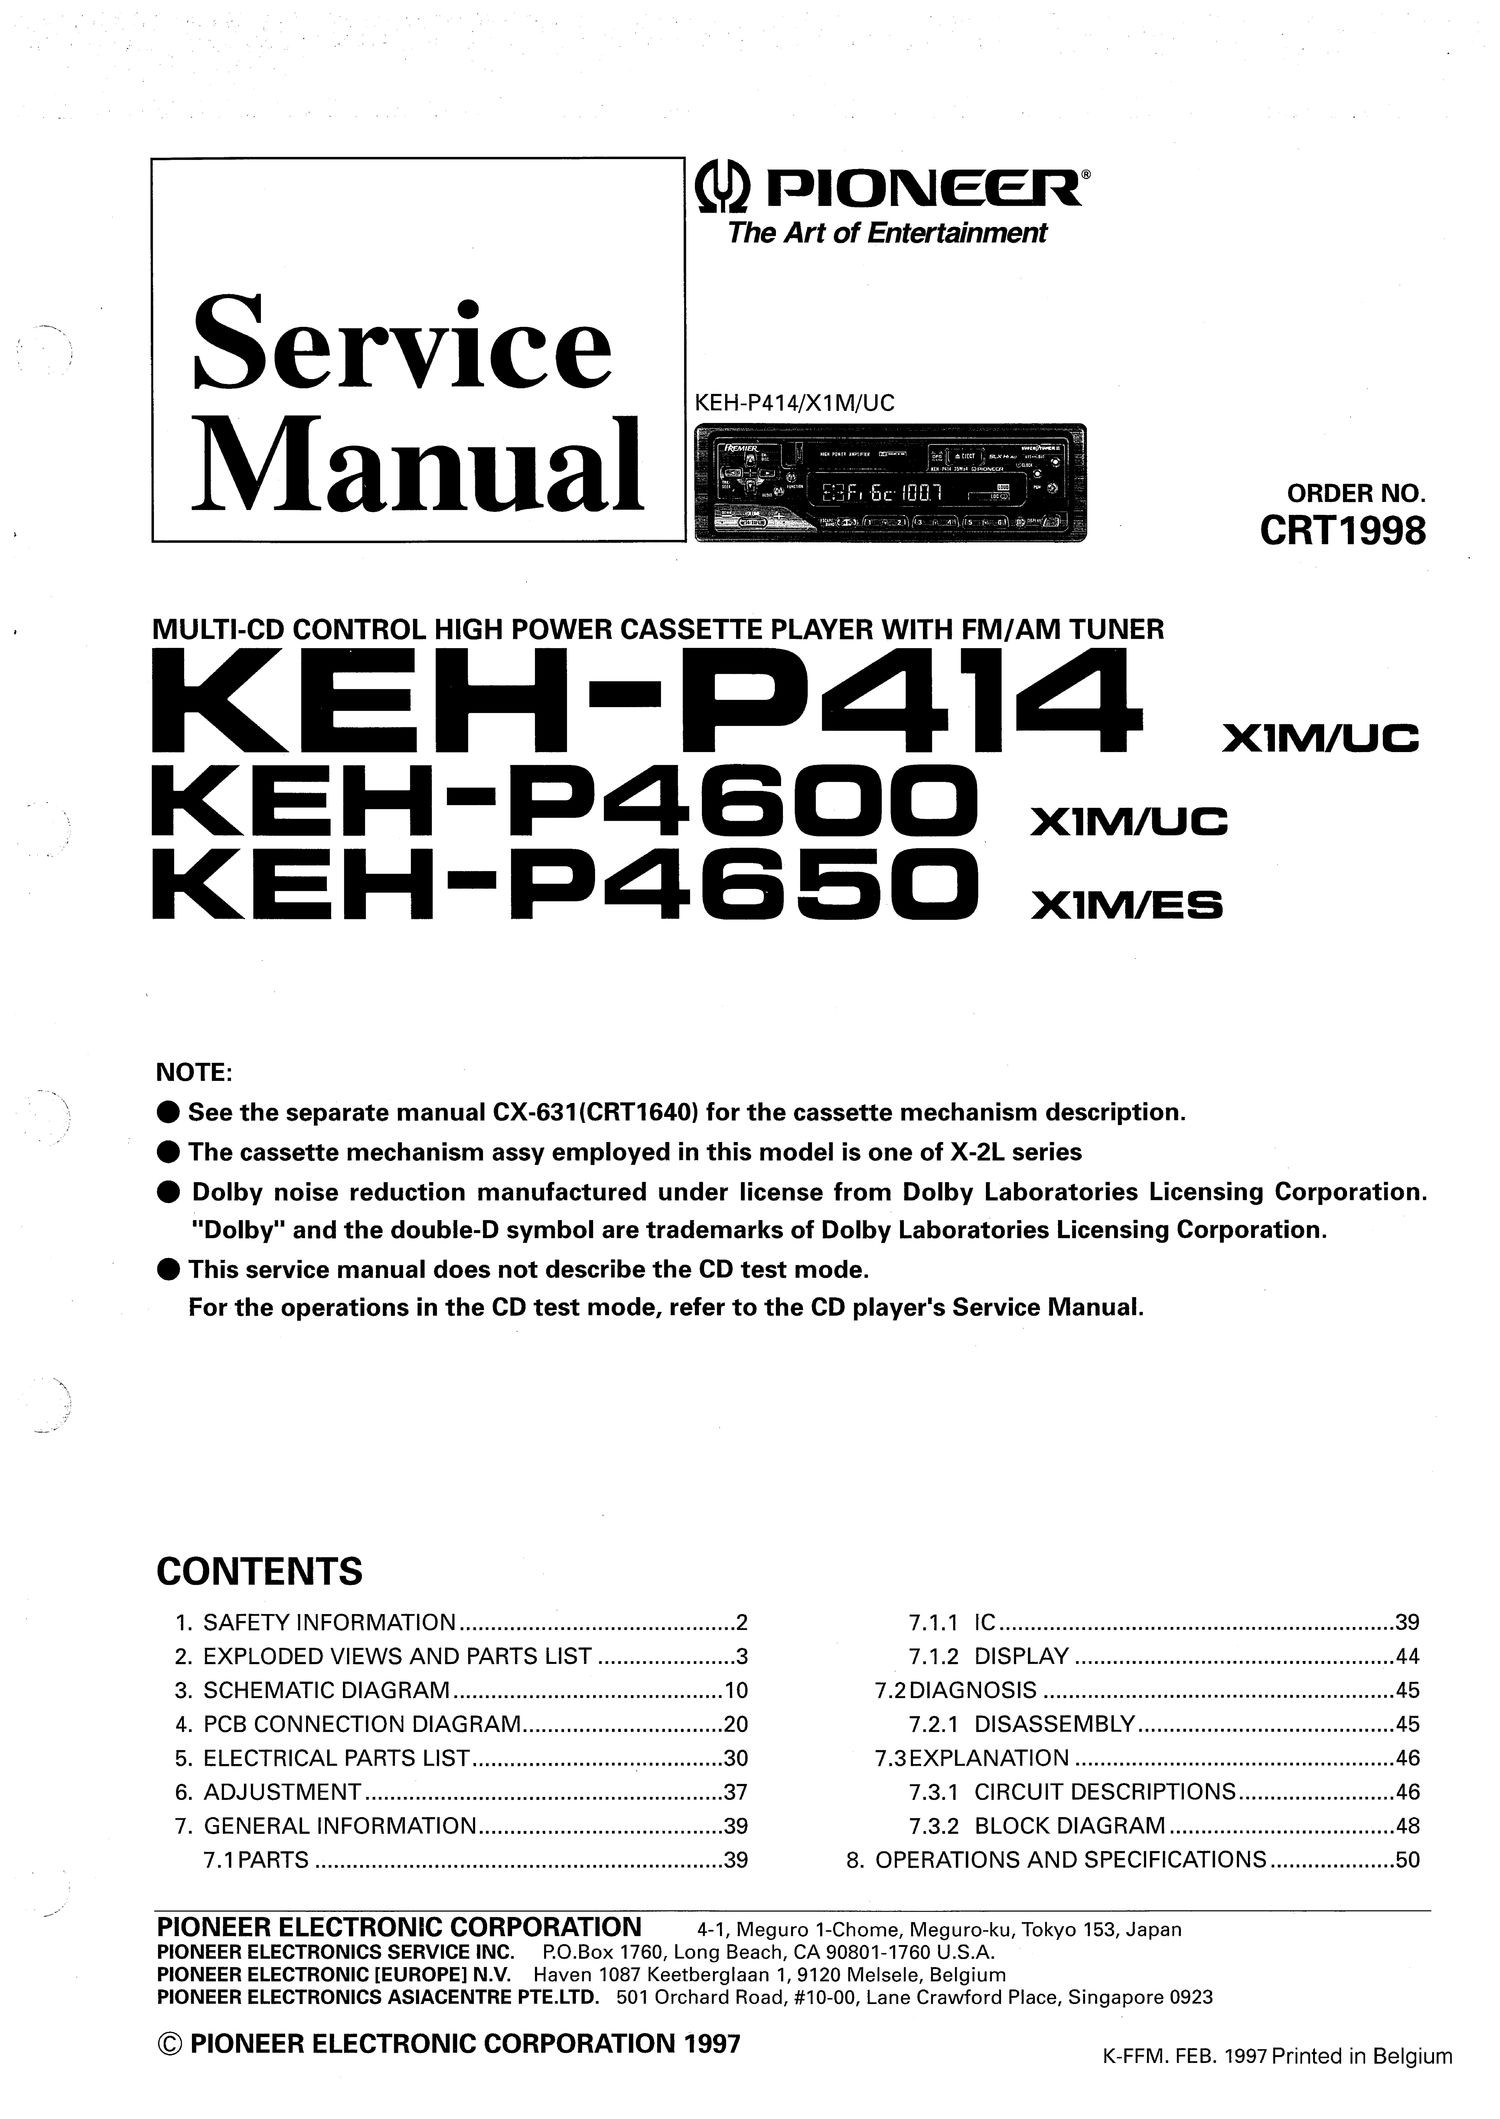 pioneer kehp 4650 service manual